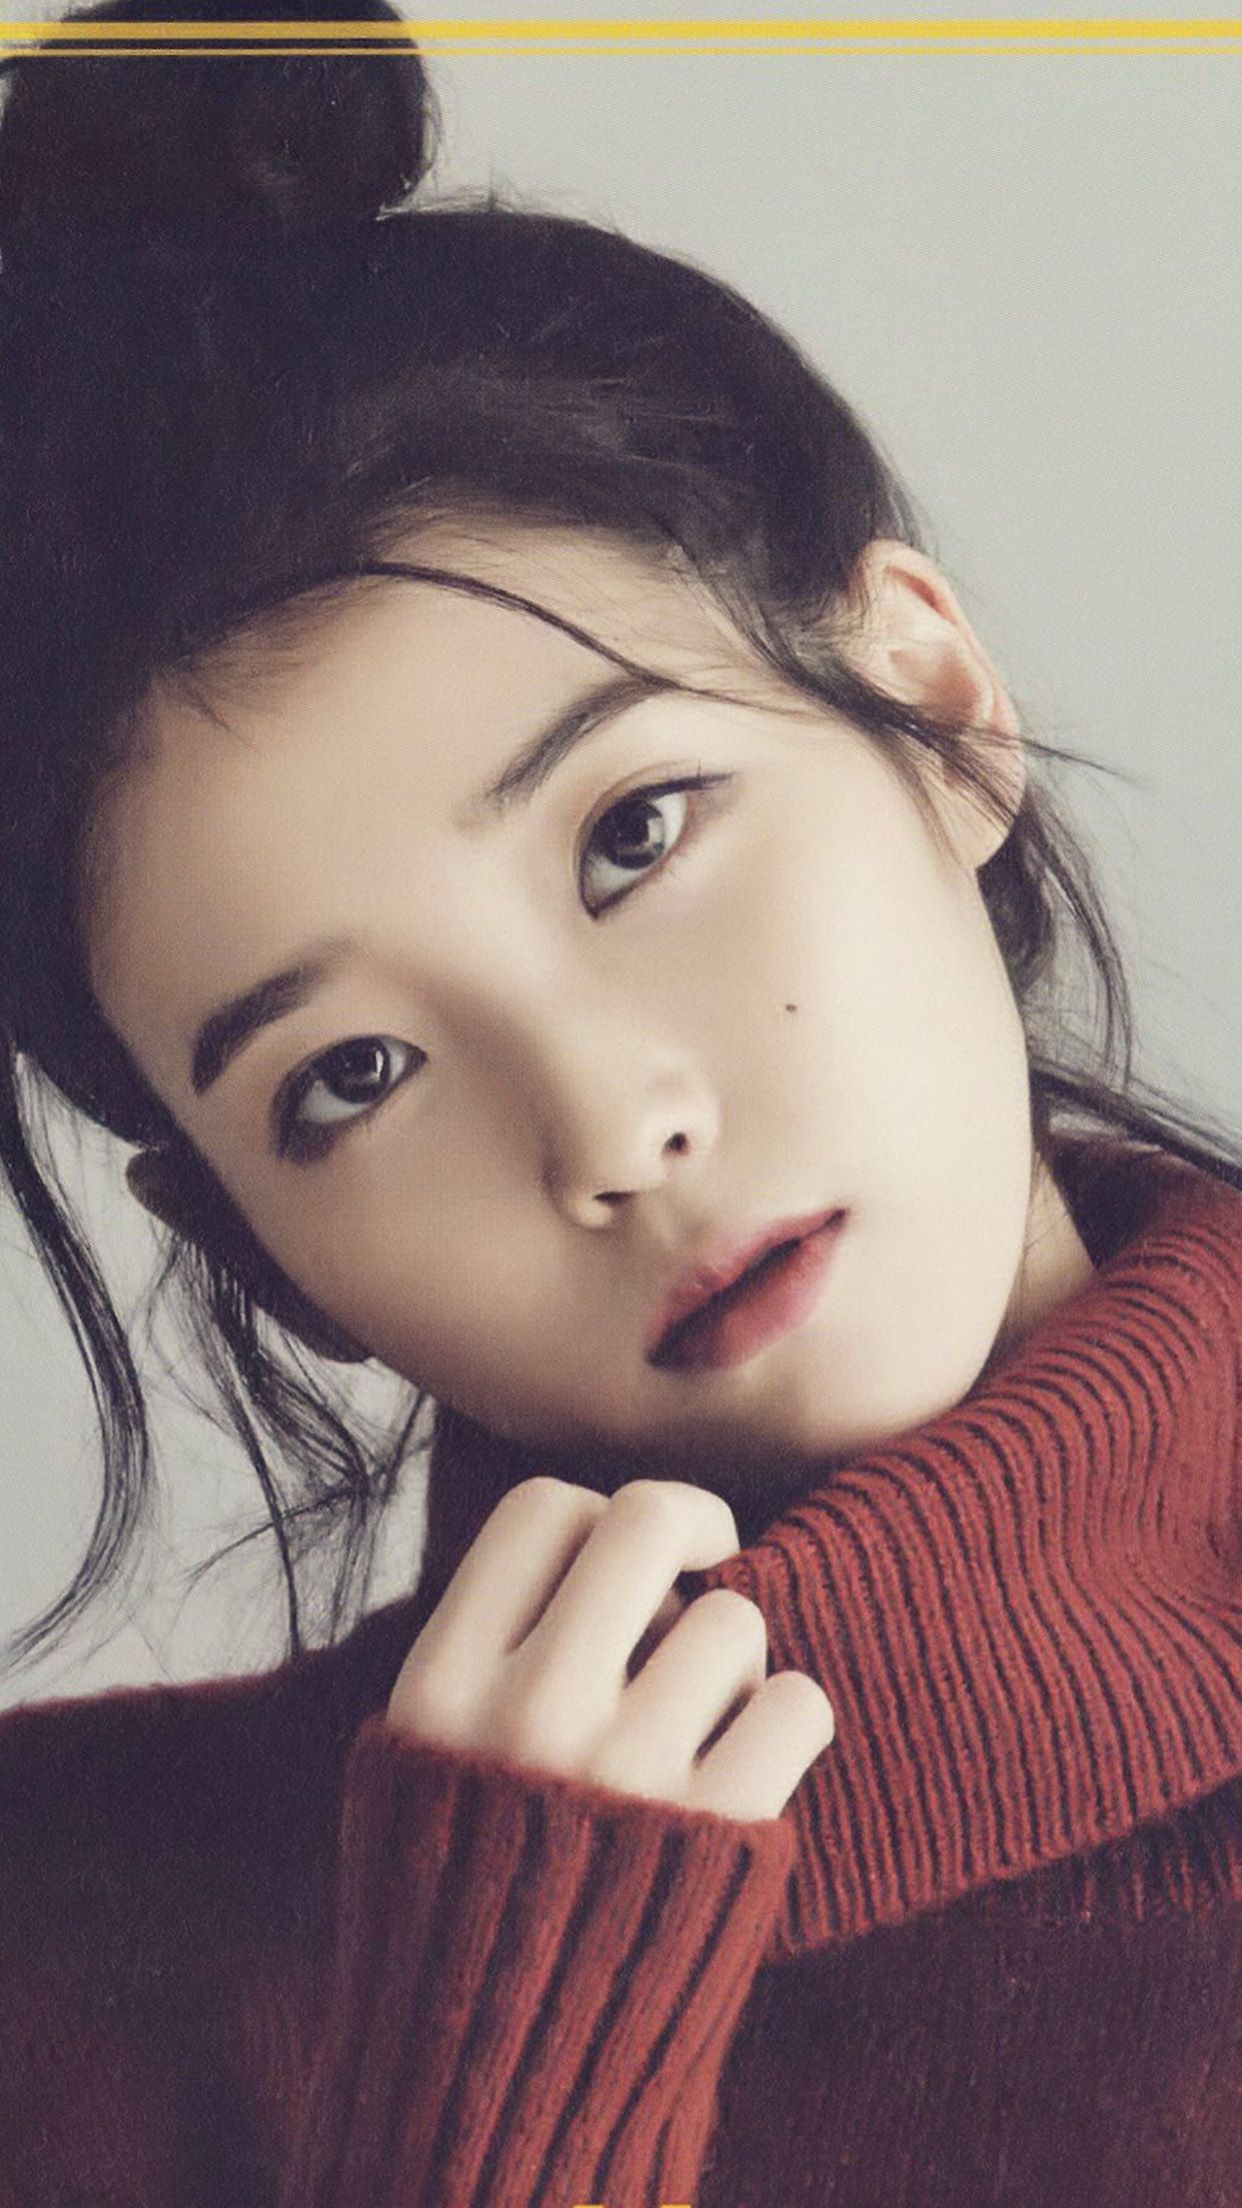 Iu Kpop Girl Singer Artist Cute .papers.co